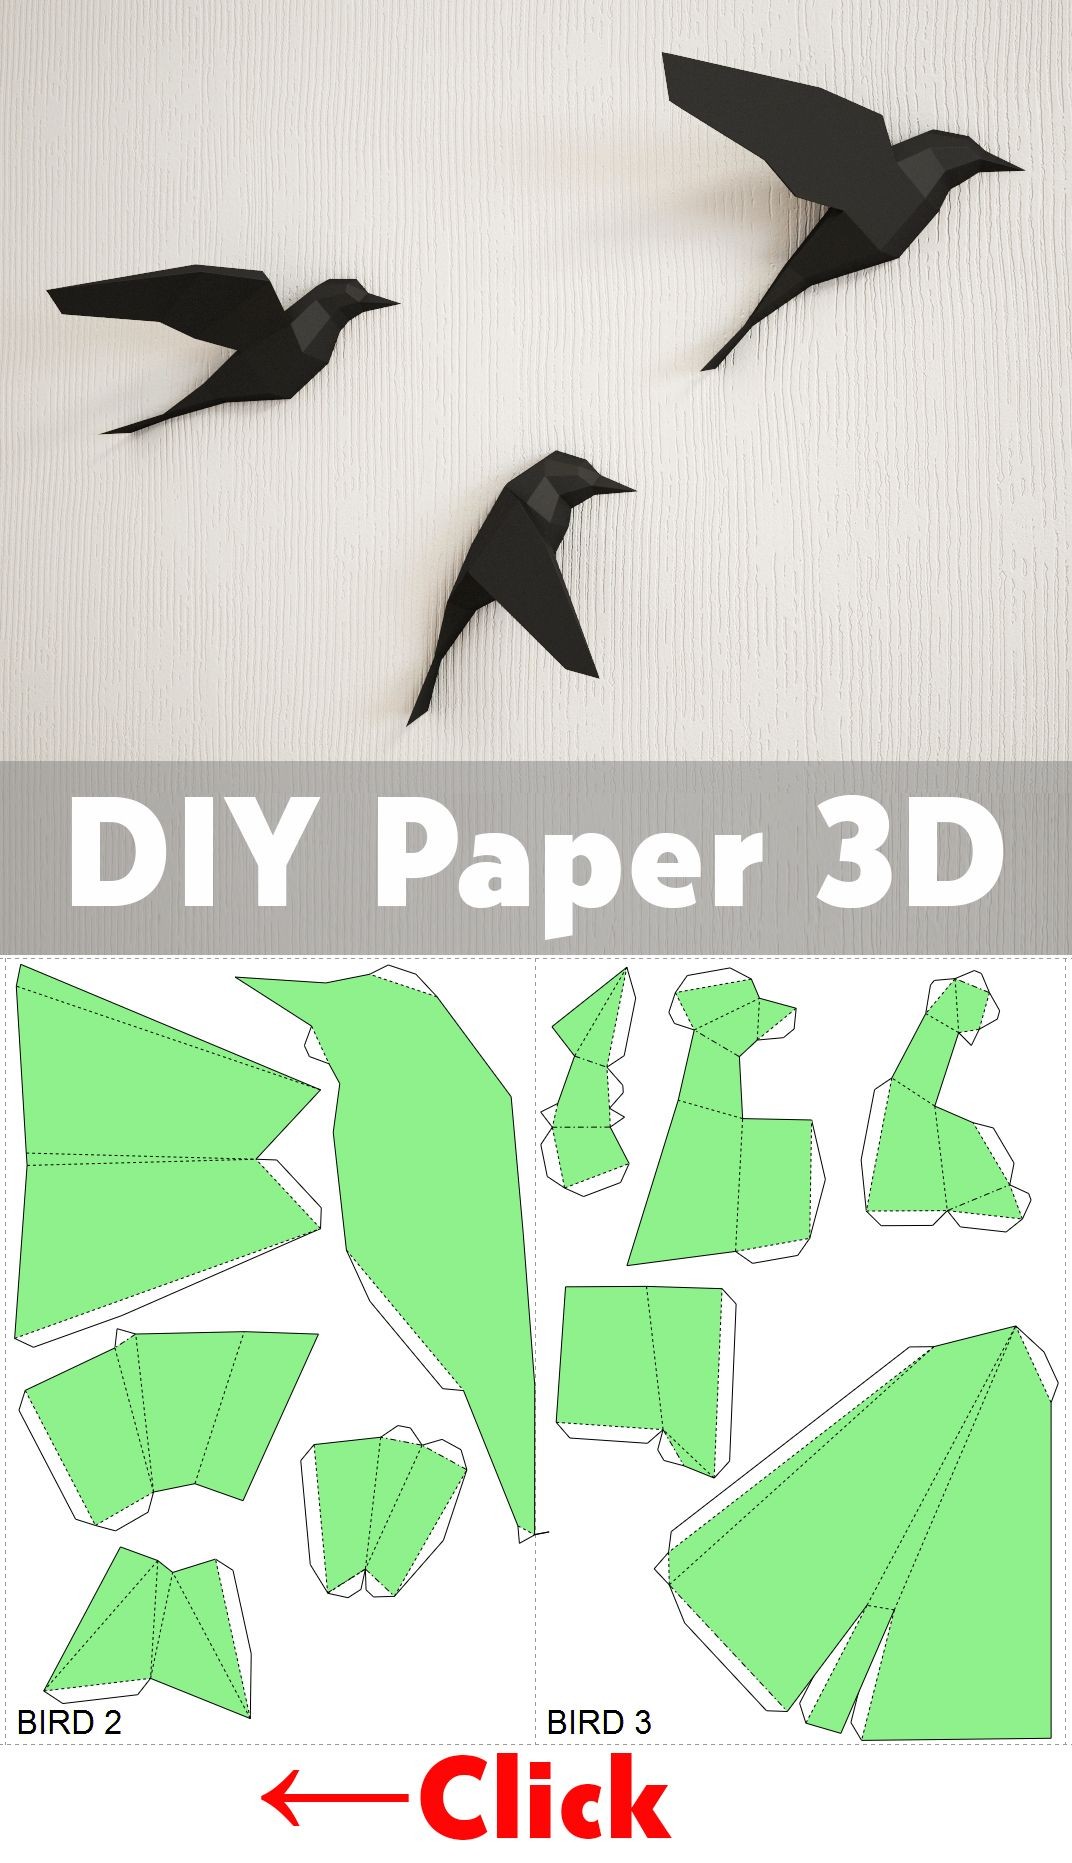 Bird Papercraft Diy Paper Birds On Wall 3d Papercraft Easy Paper Model Sculpture